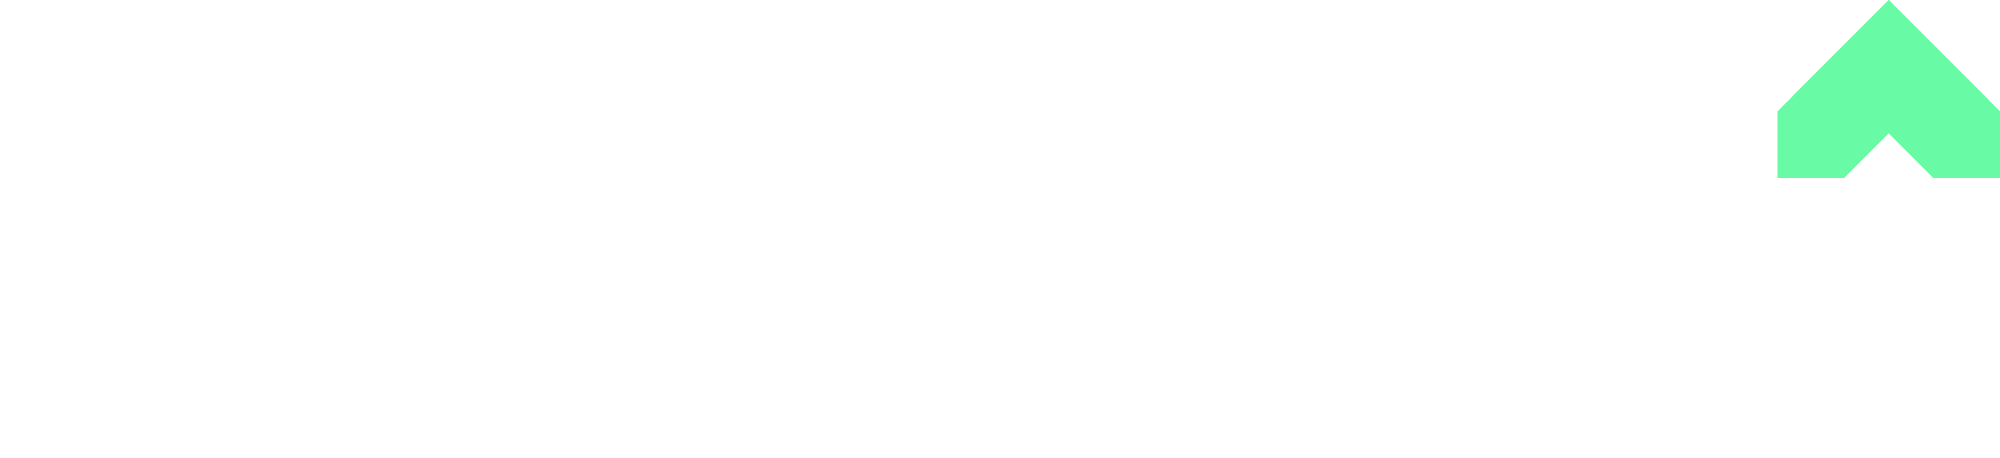 fairness-logo